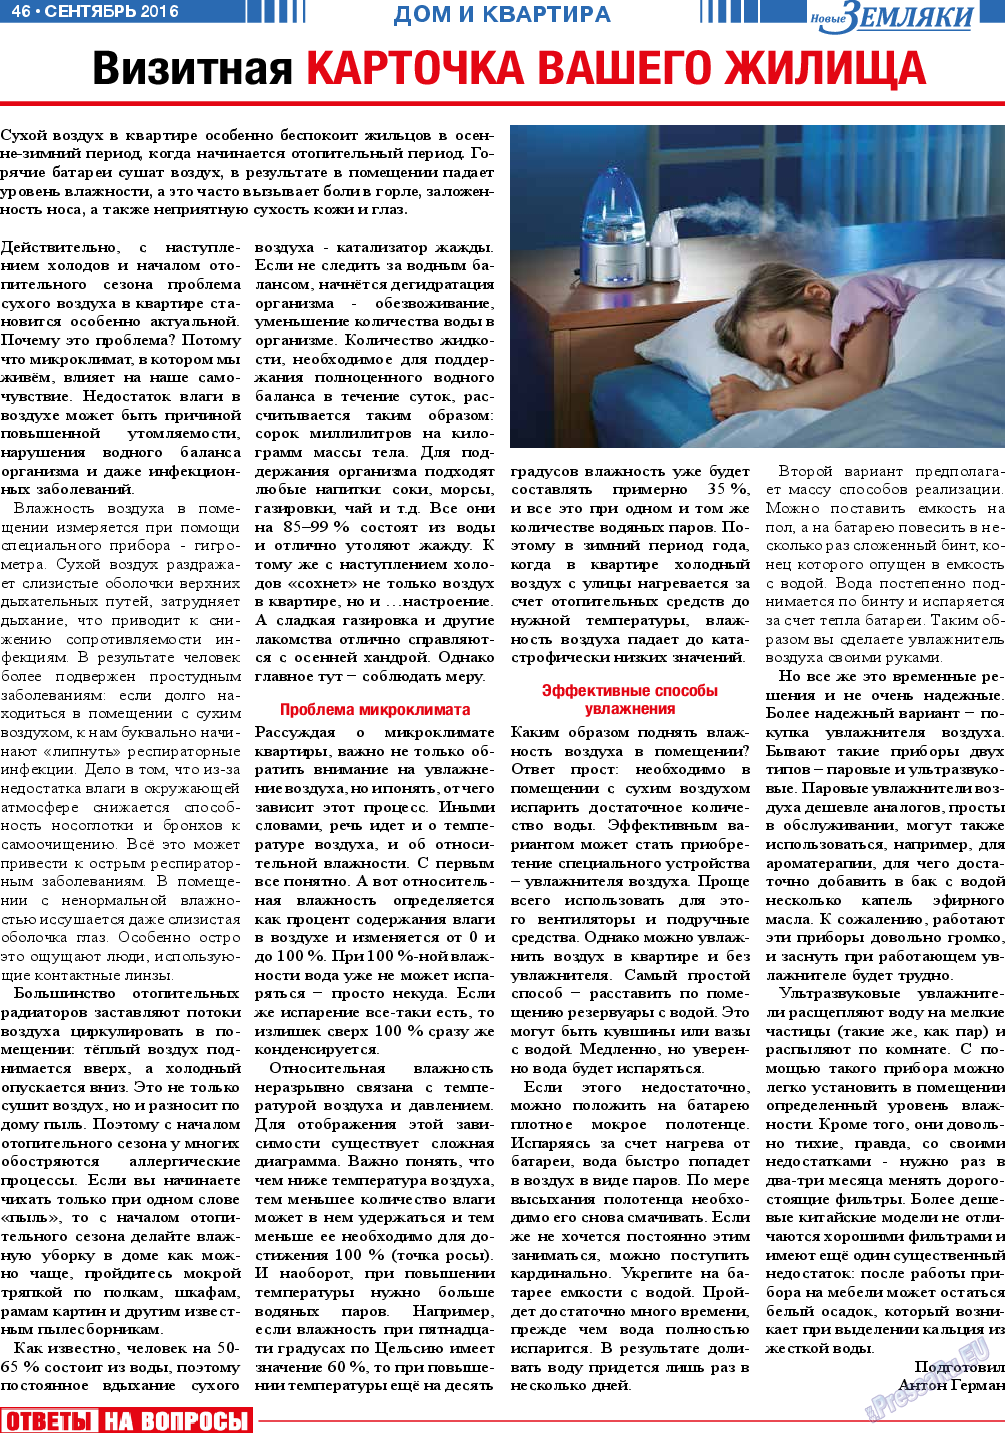 Новые Земляки (газета). 2016 год, номер 9, стр. 46